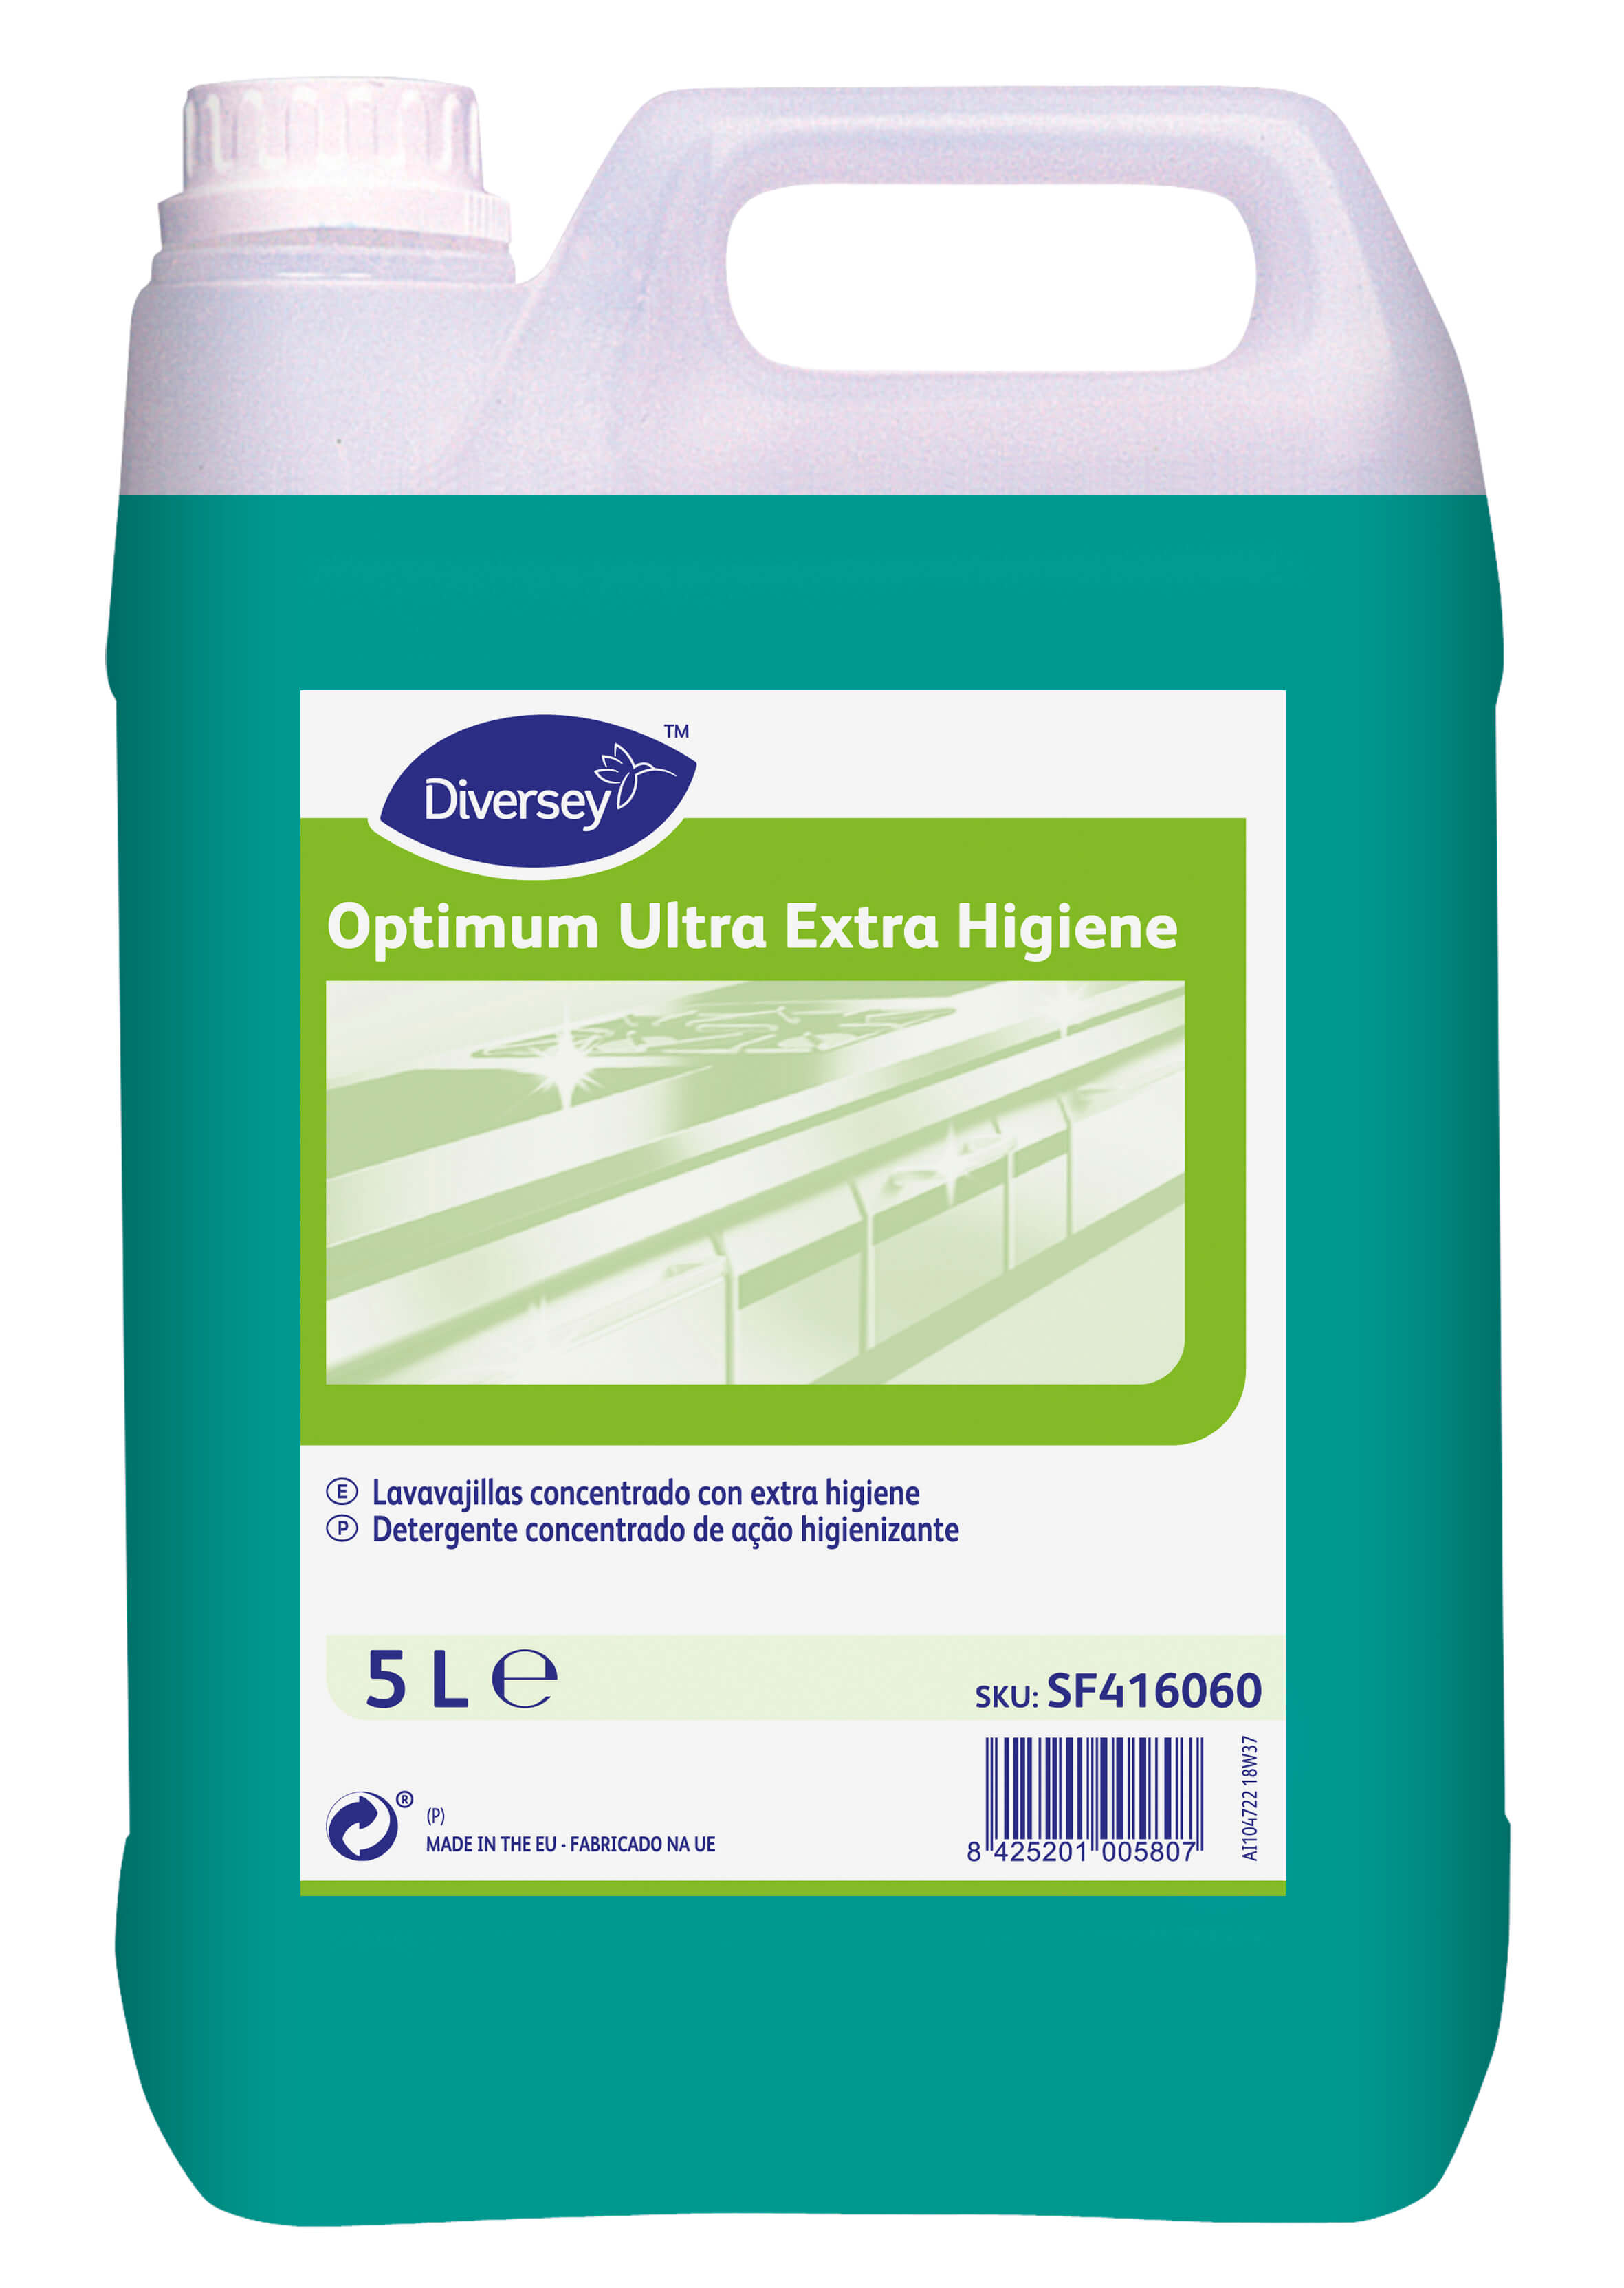 Optimum Ultra Extra Higiene